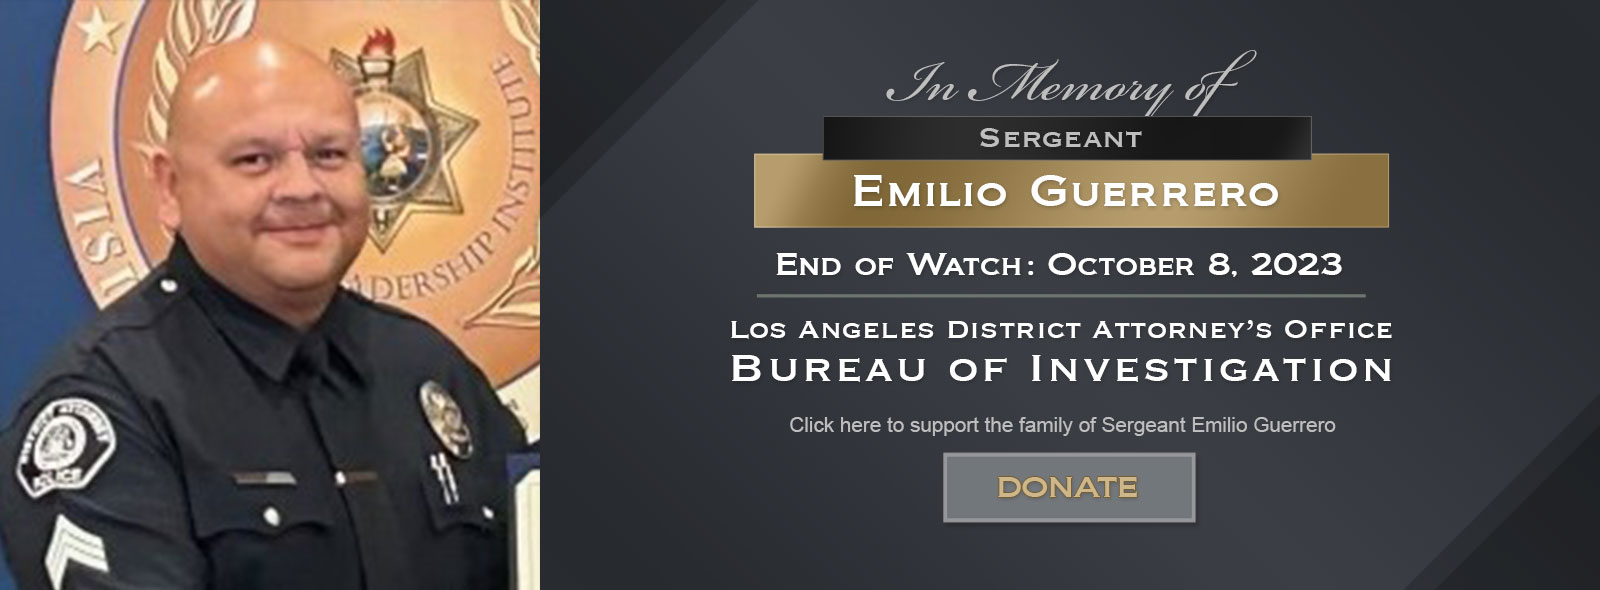 Sergeant Emilio Guerrero Memorial Fund